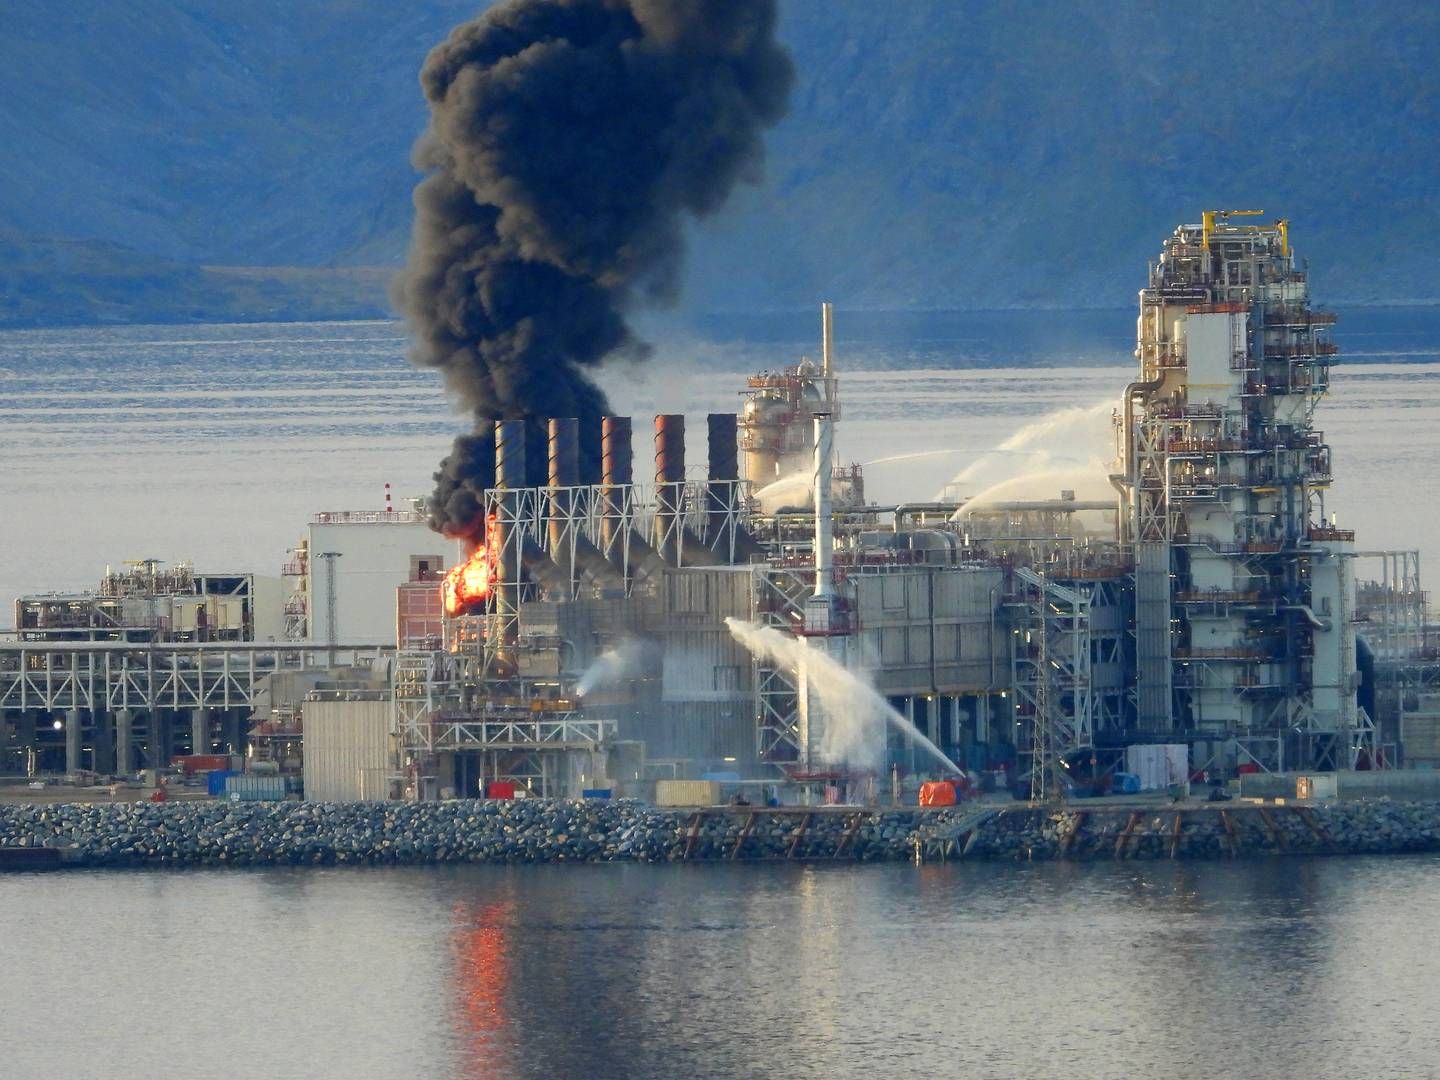 BRANNSIKRING: Hammerfest LNG var stengt i over et år etter brannen i september 2020. Equinor jobbet fortsatt med brannsikringen på anlegget. | Foto: Bjarne Halvorsen / NTB